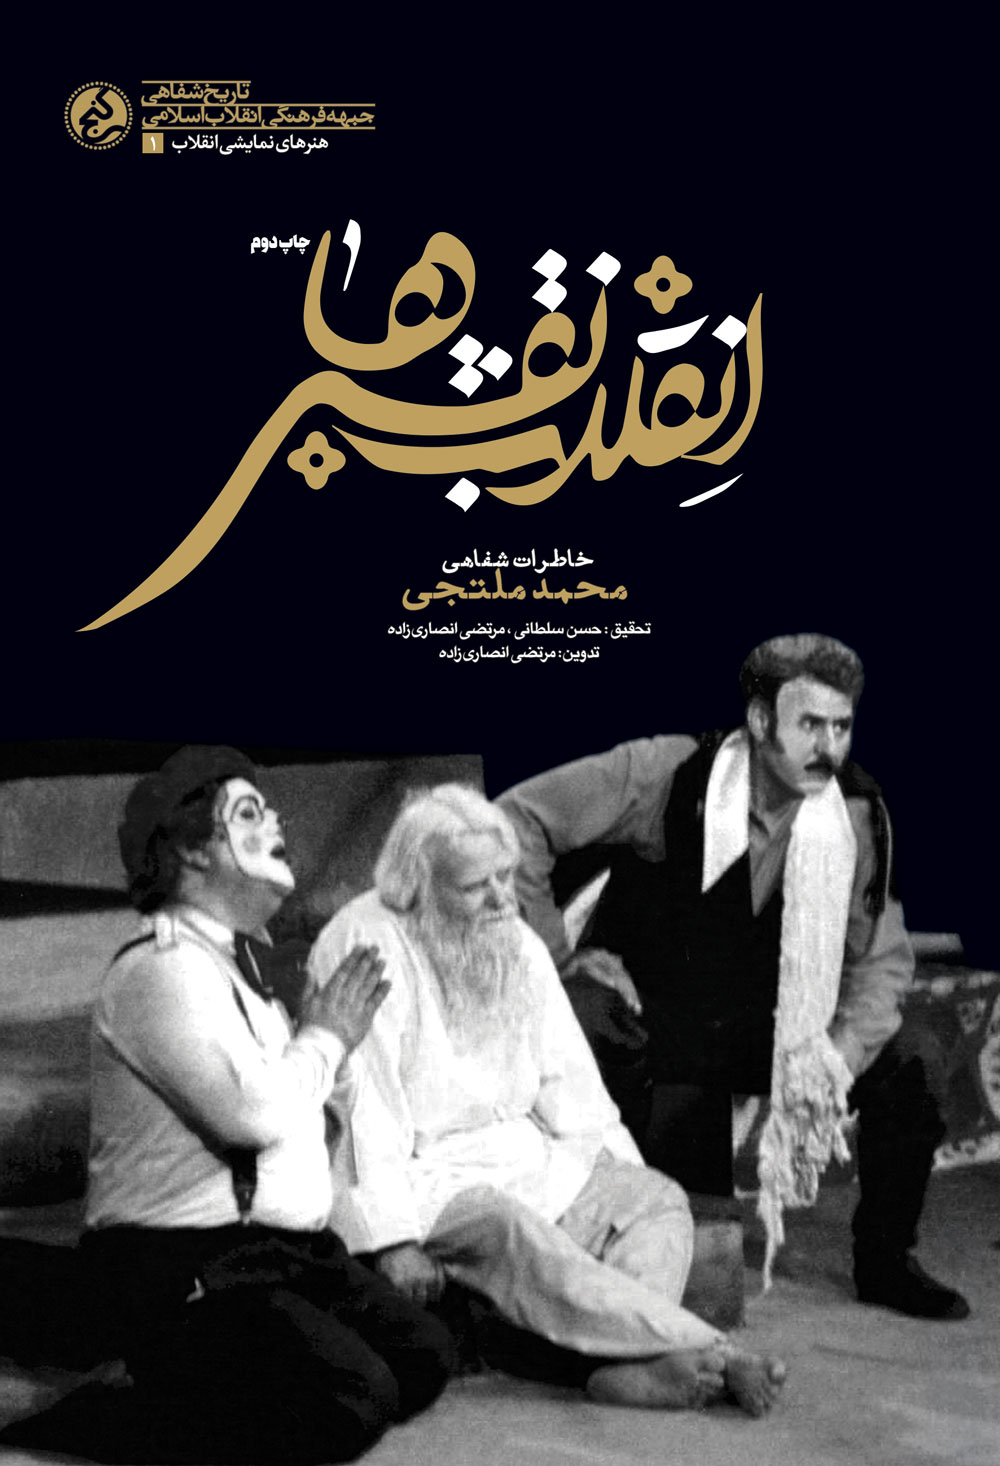 کتاب «انقلاب نقش ها» به چاپ دوم رسید/ خاطرات یک هنرمند مسجدی تئاتر